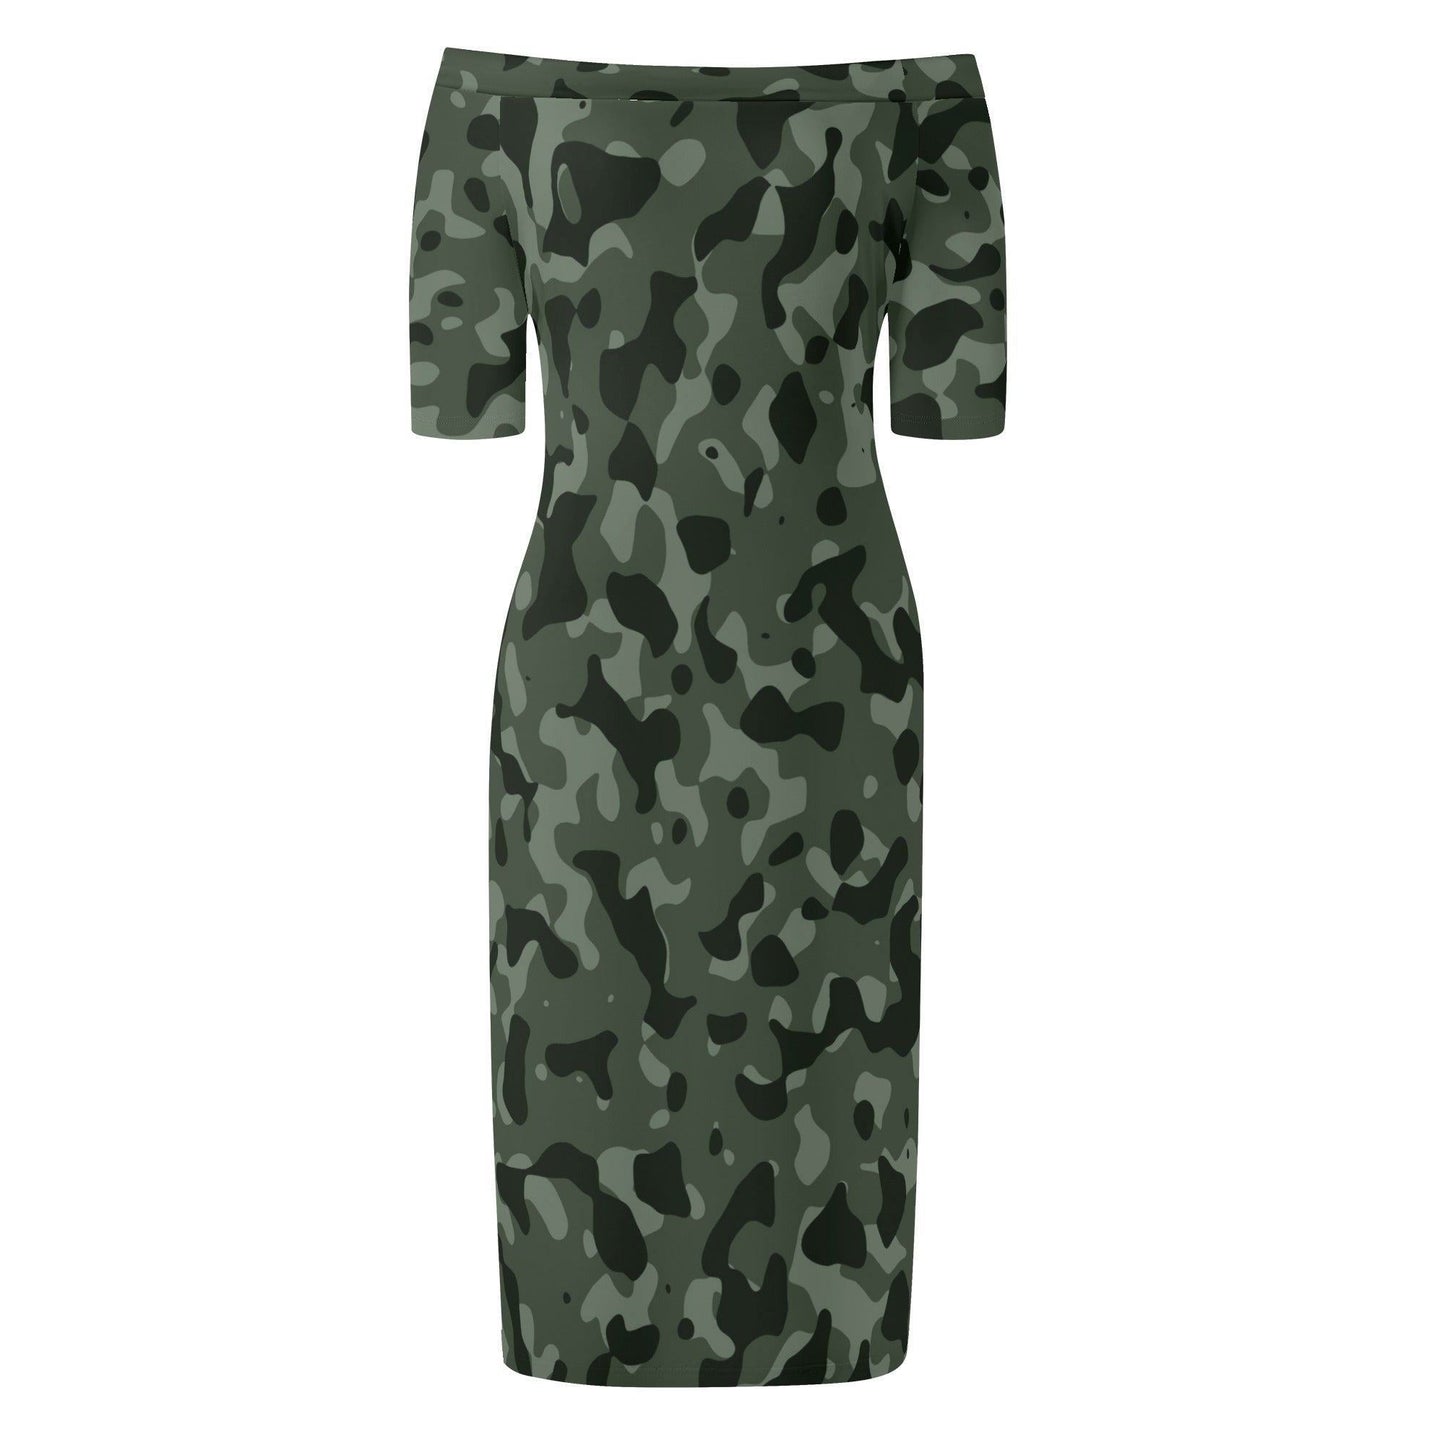 Green Camouflage Off-Shoulder-Kleid -- Green Camouflage Off-Shoulder-Kleid - undefined Off-Shoulder-Kleid | JLR Design